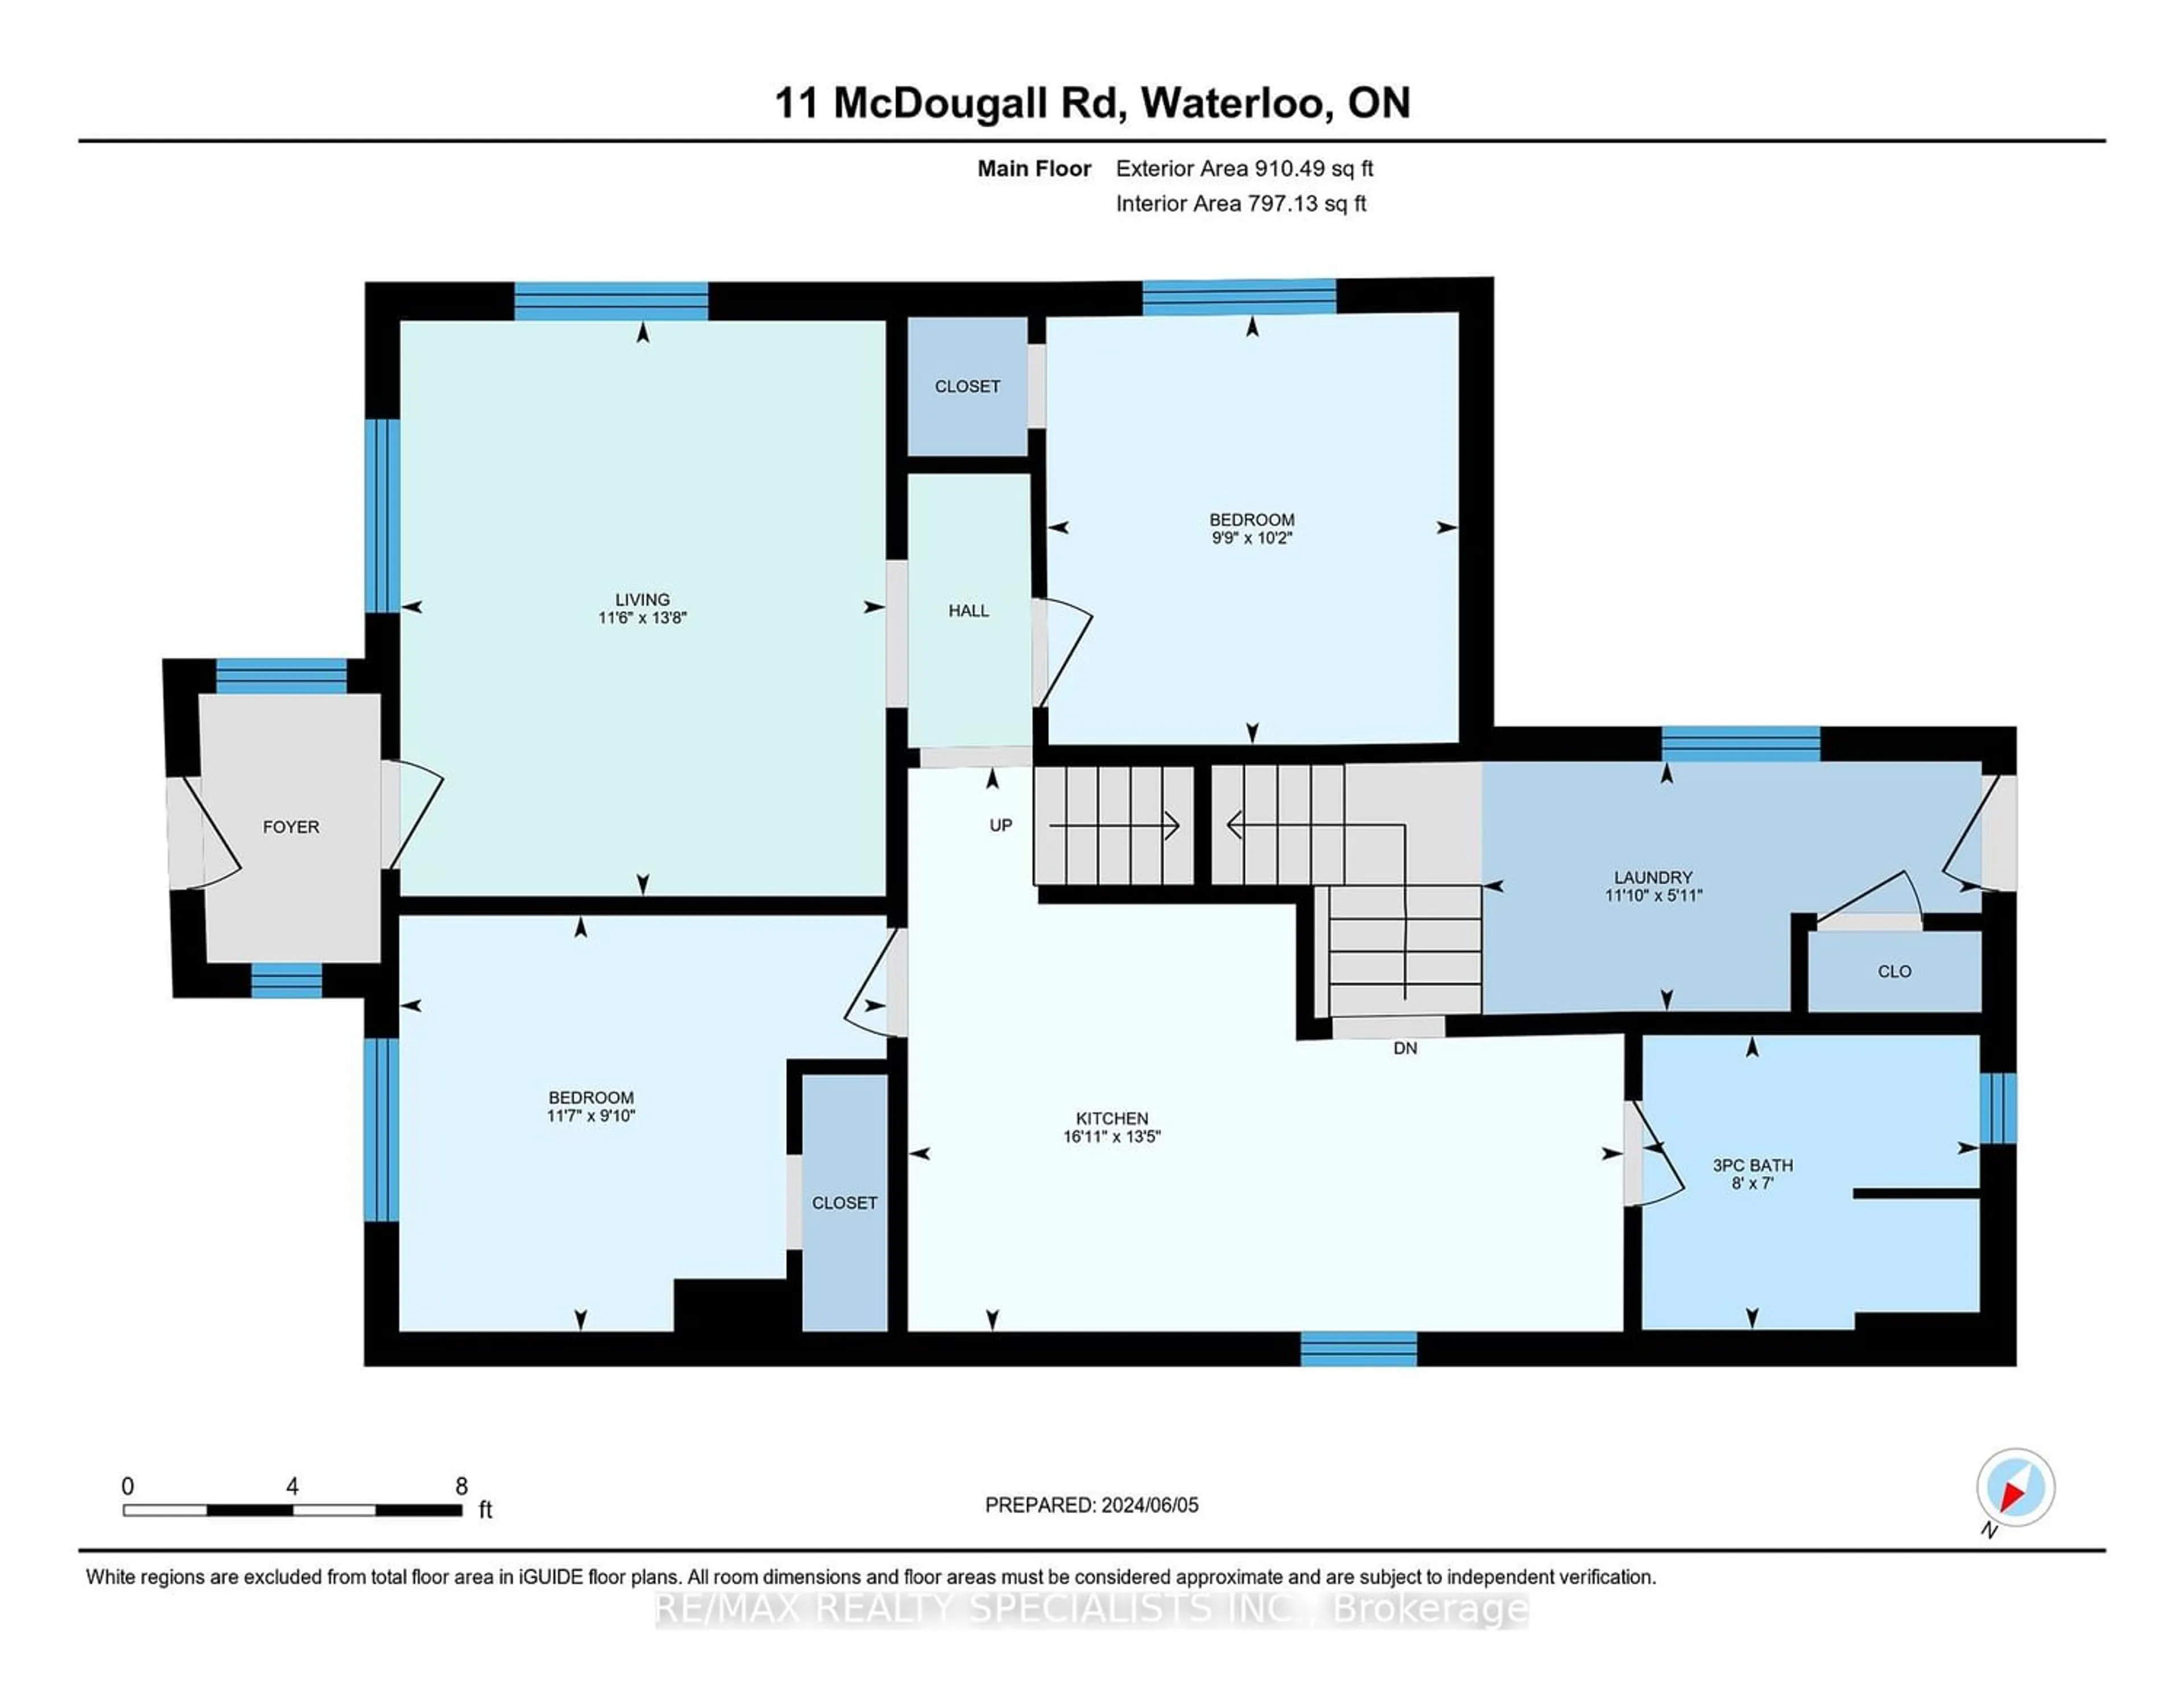 Floor plan for 11 Mcdougall Rd, Waterloo Ontario N2L 2W4